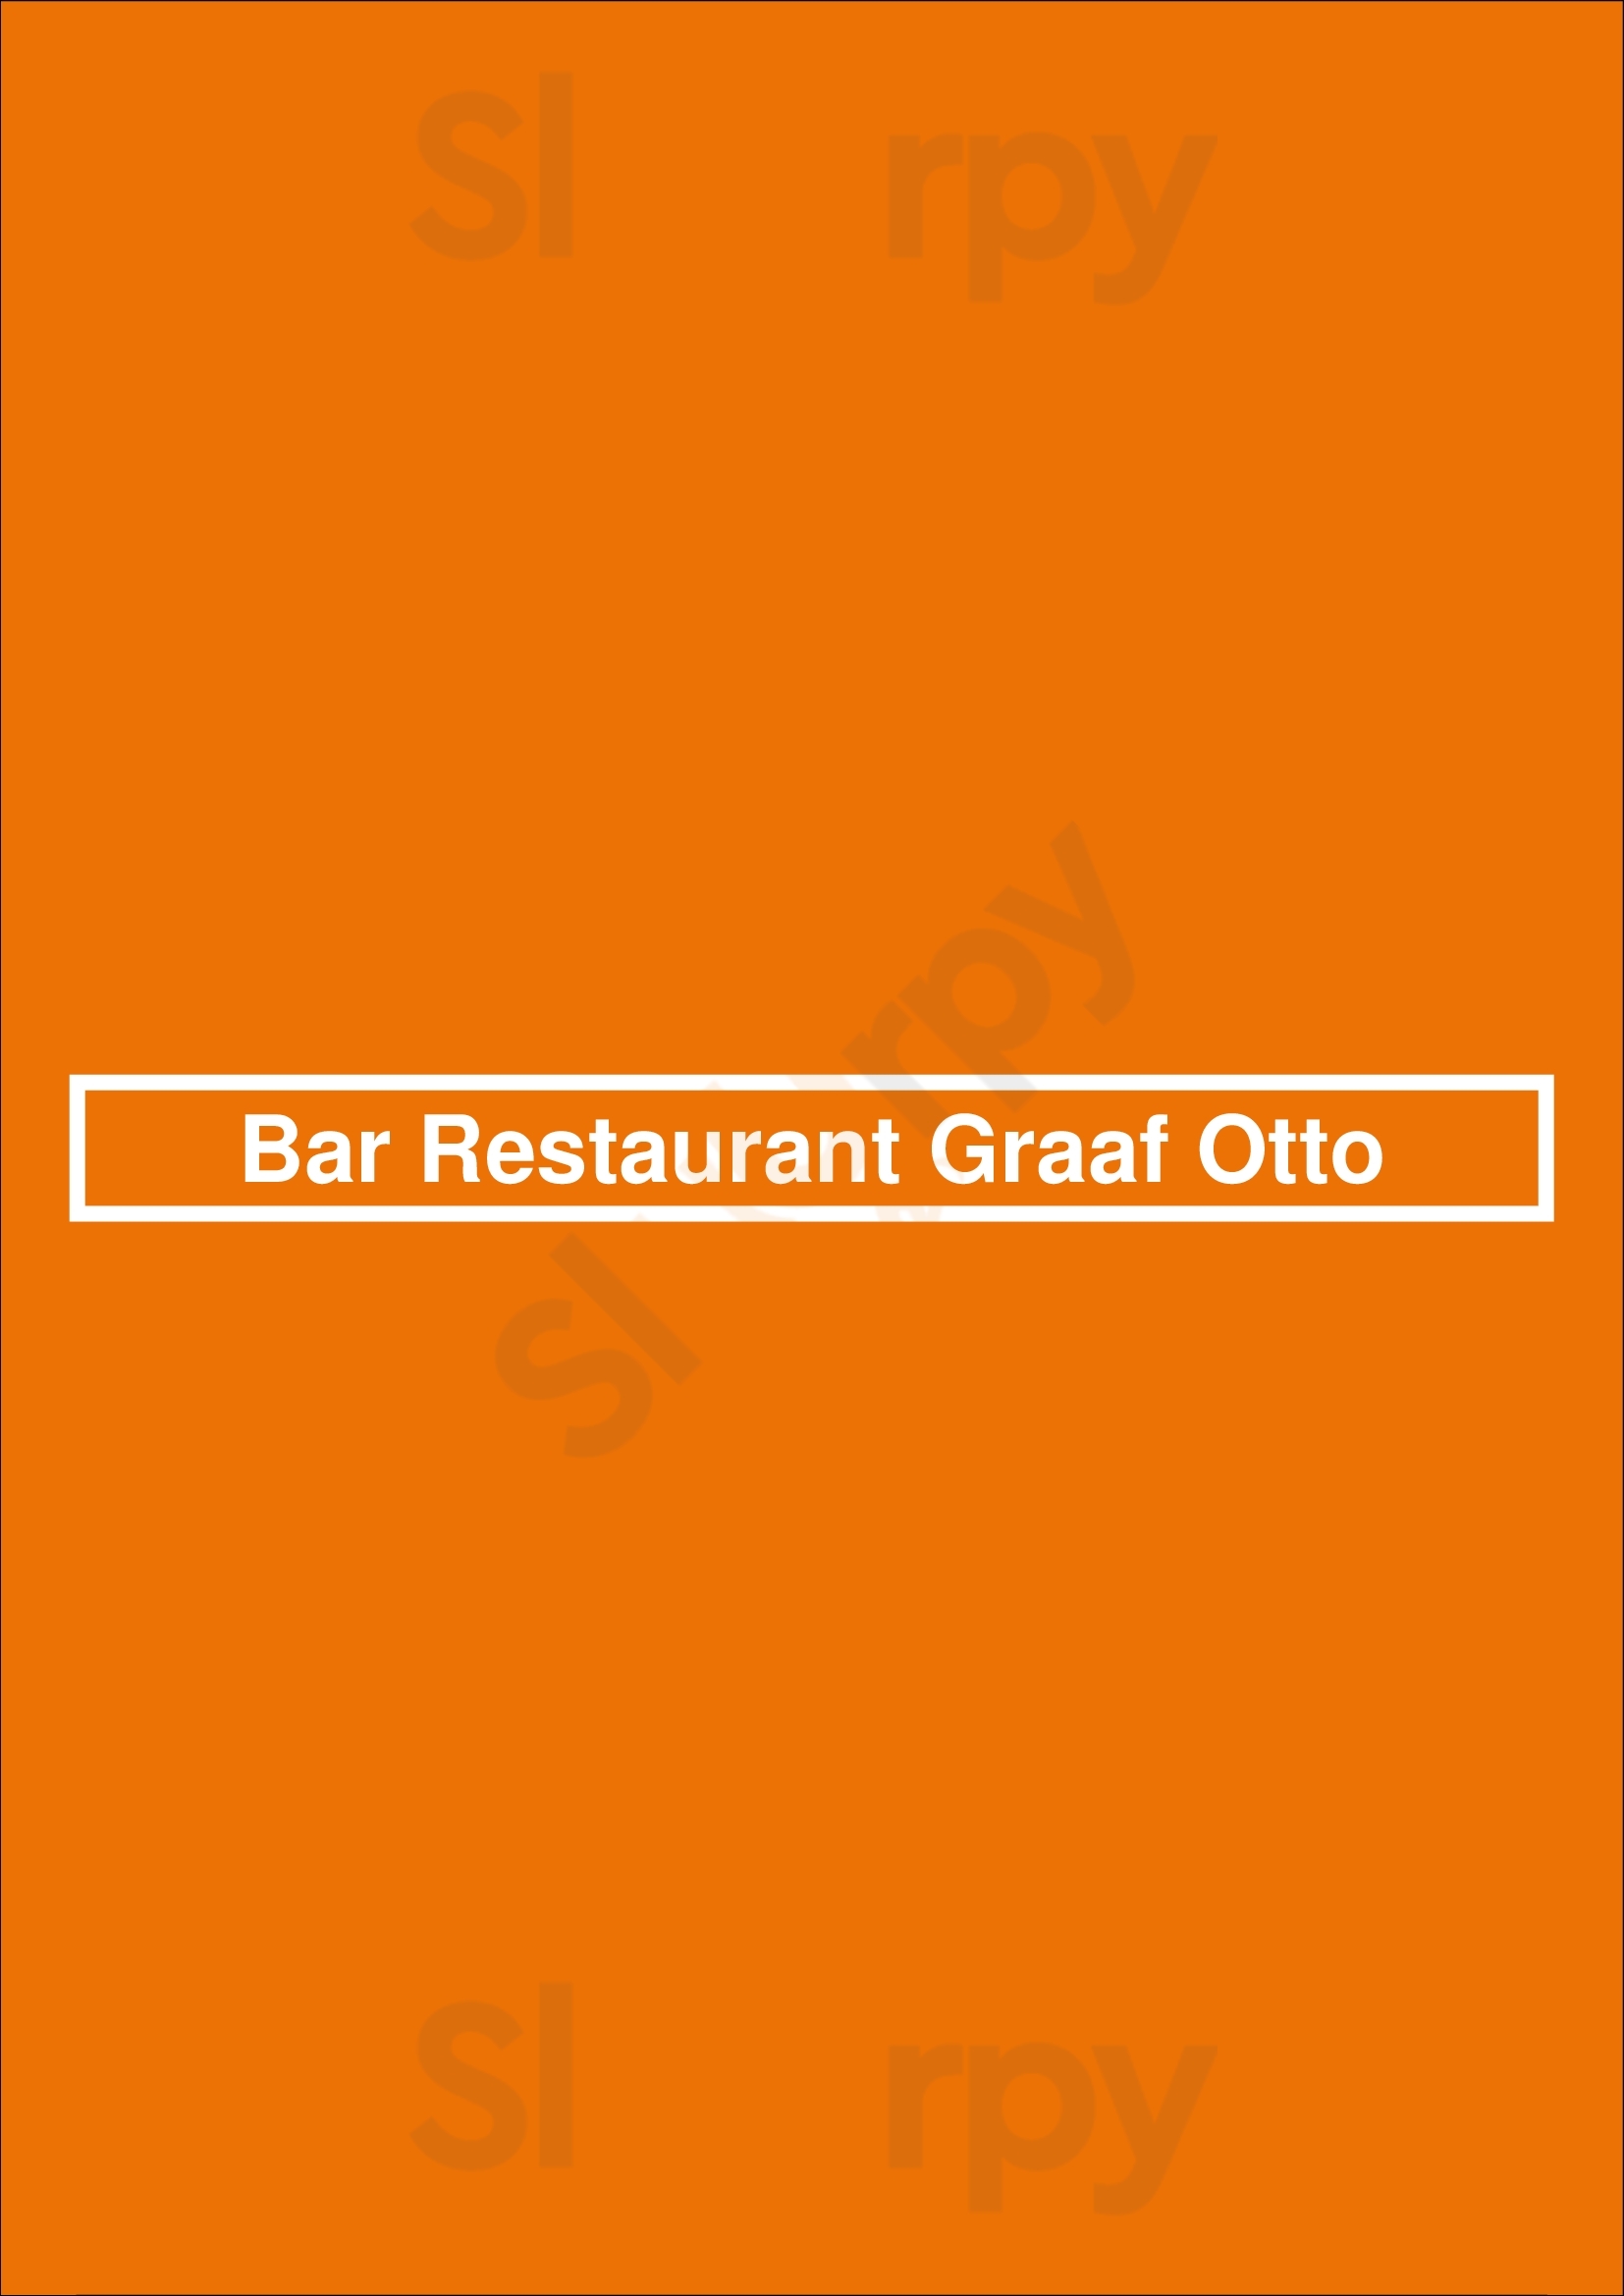 Bar Restaurant Graaf Otto Arnhem Menu - 1